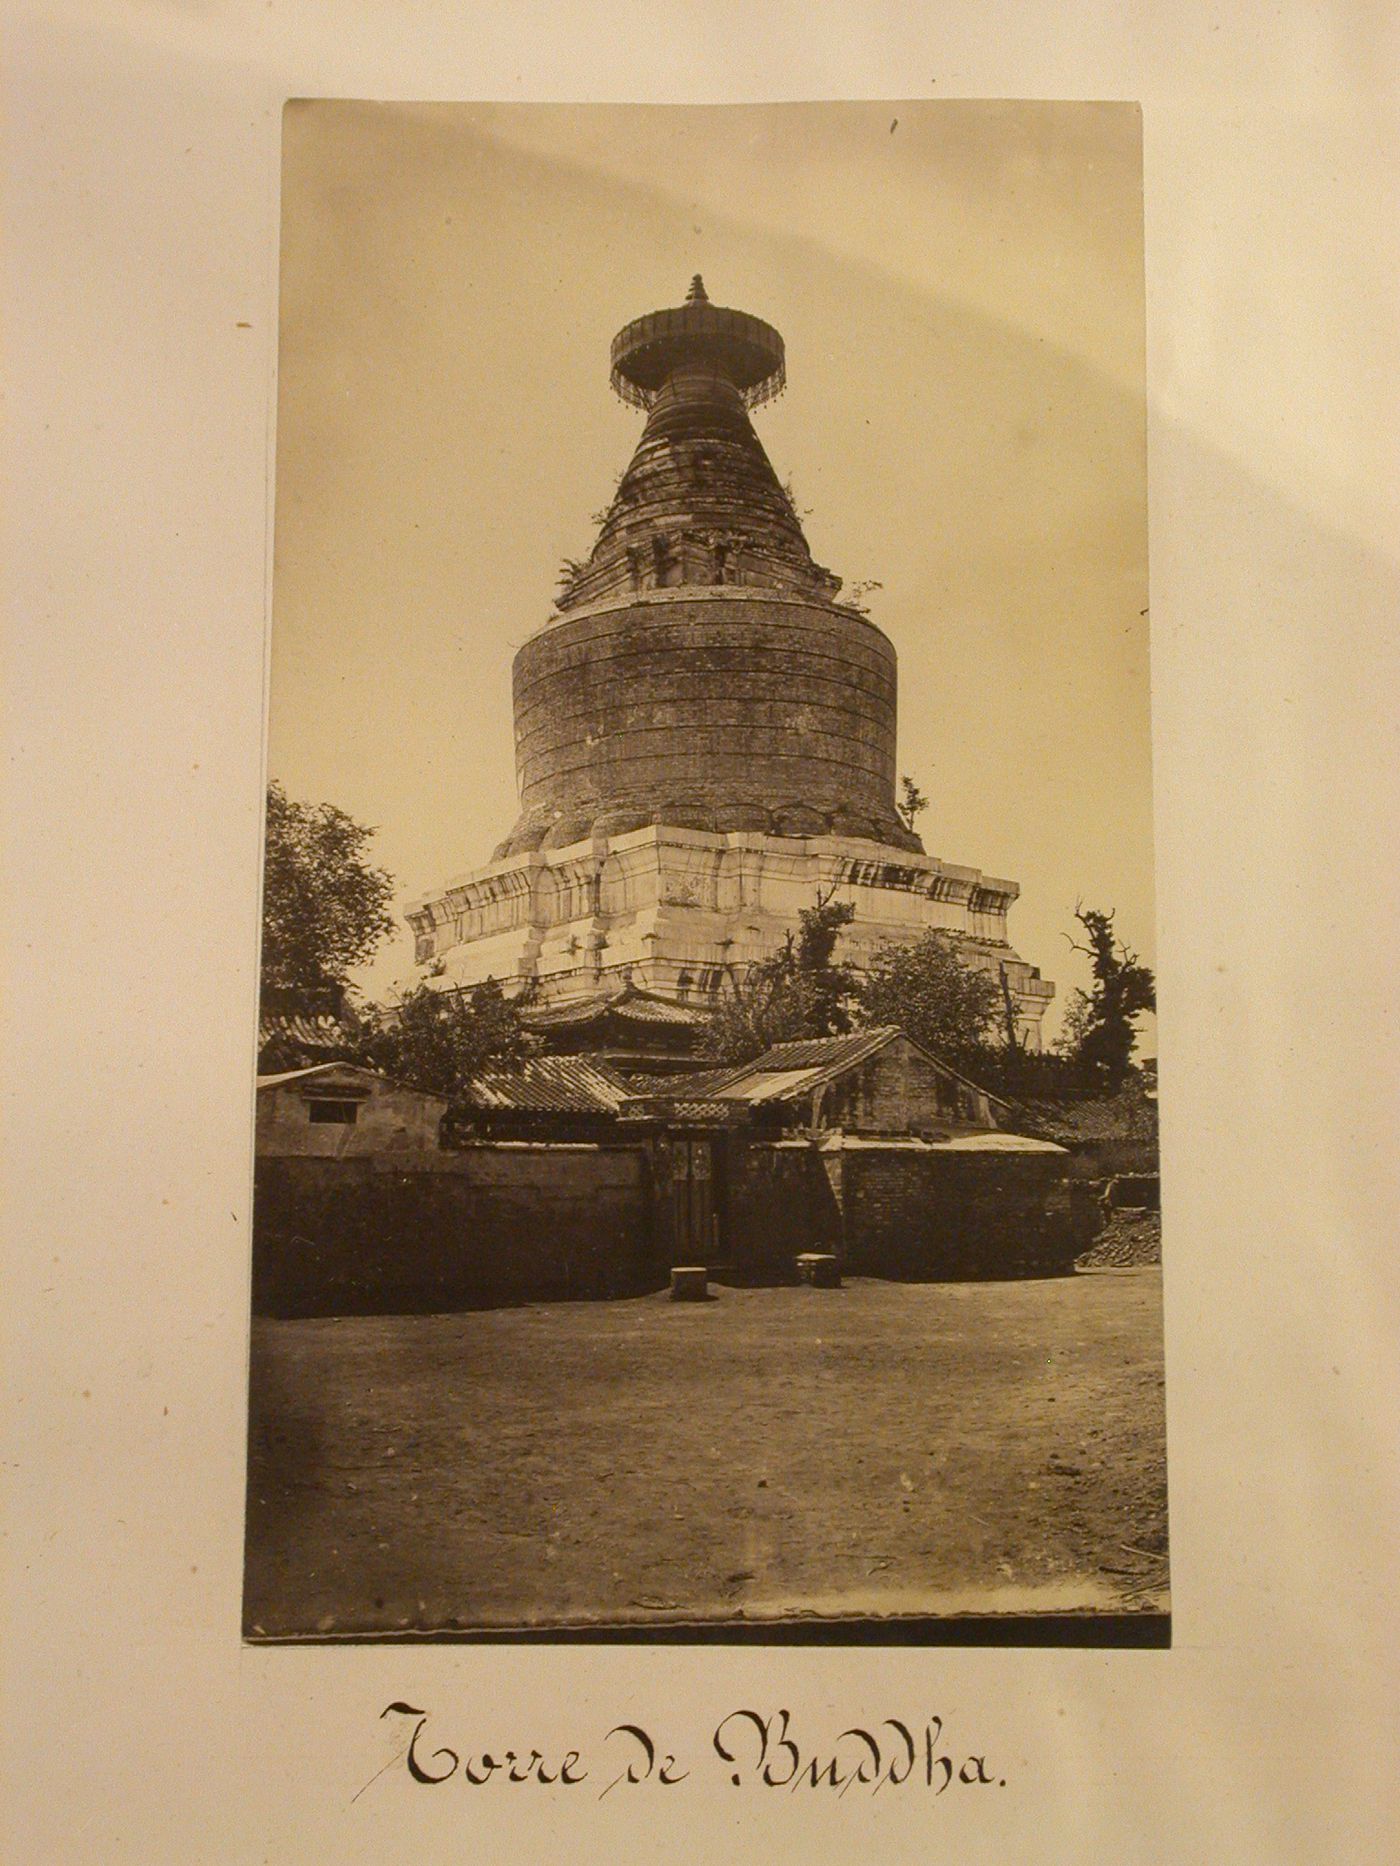 View of the White Pagoda [Baita], Monastery of Divine Retribution [Miaoying Si], Peking (now Beijing), China